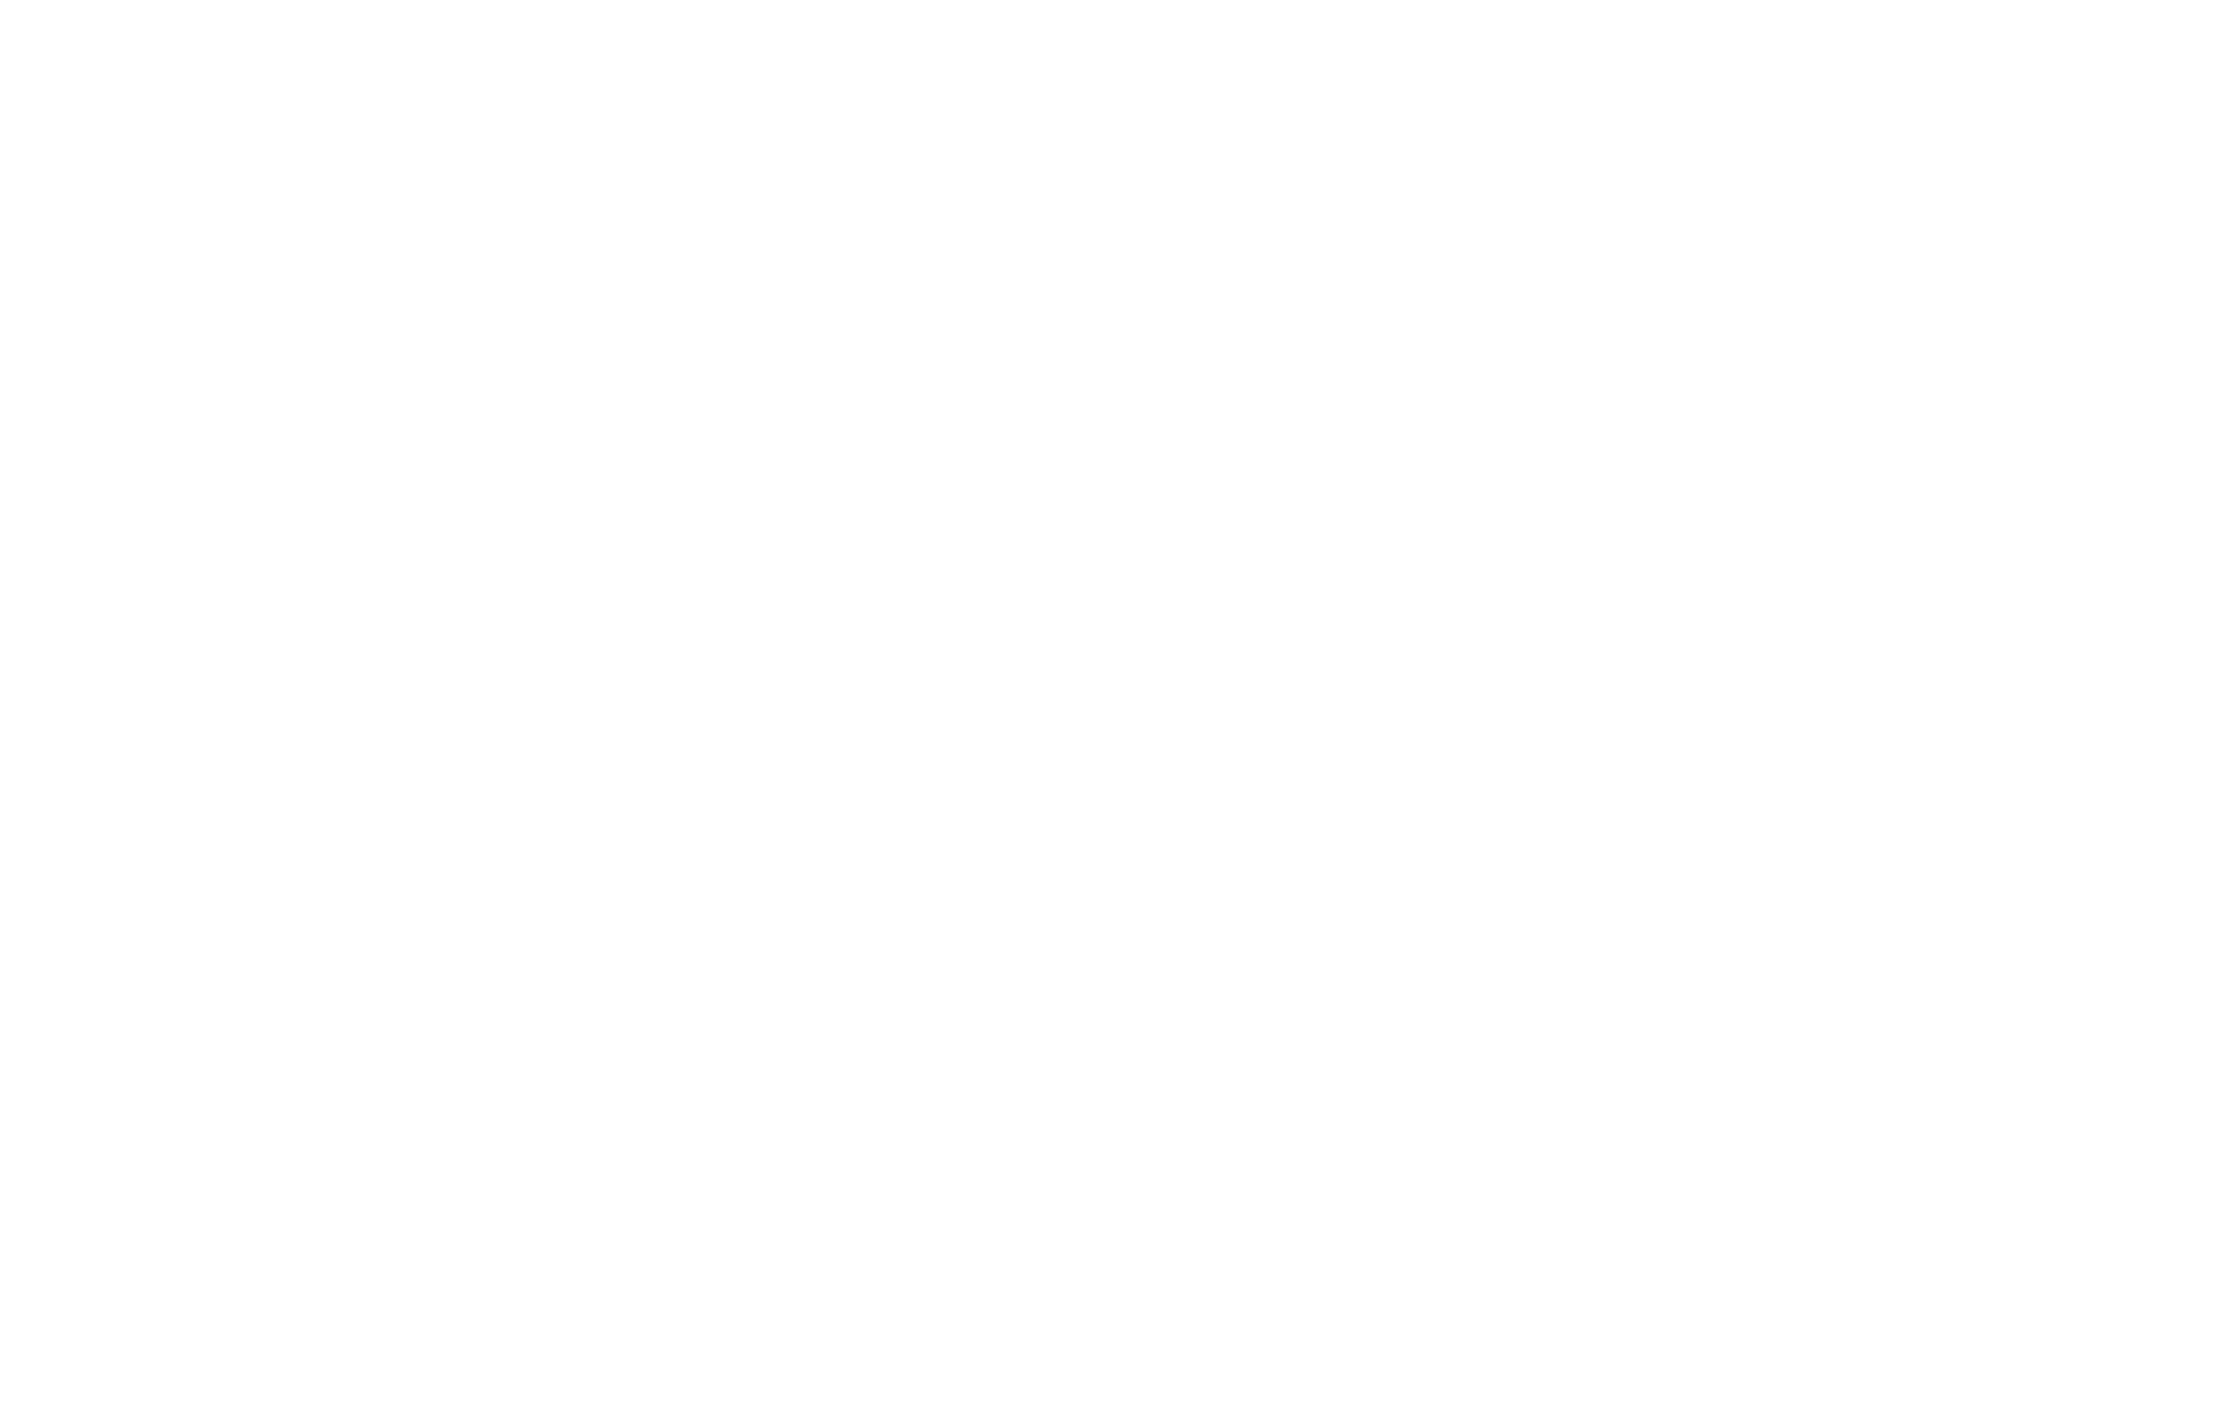 edge-direct-logo-white-registration